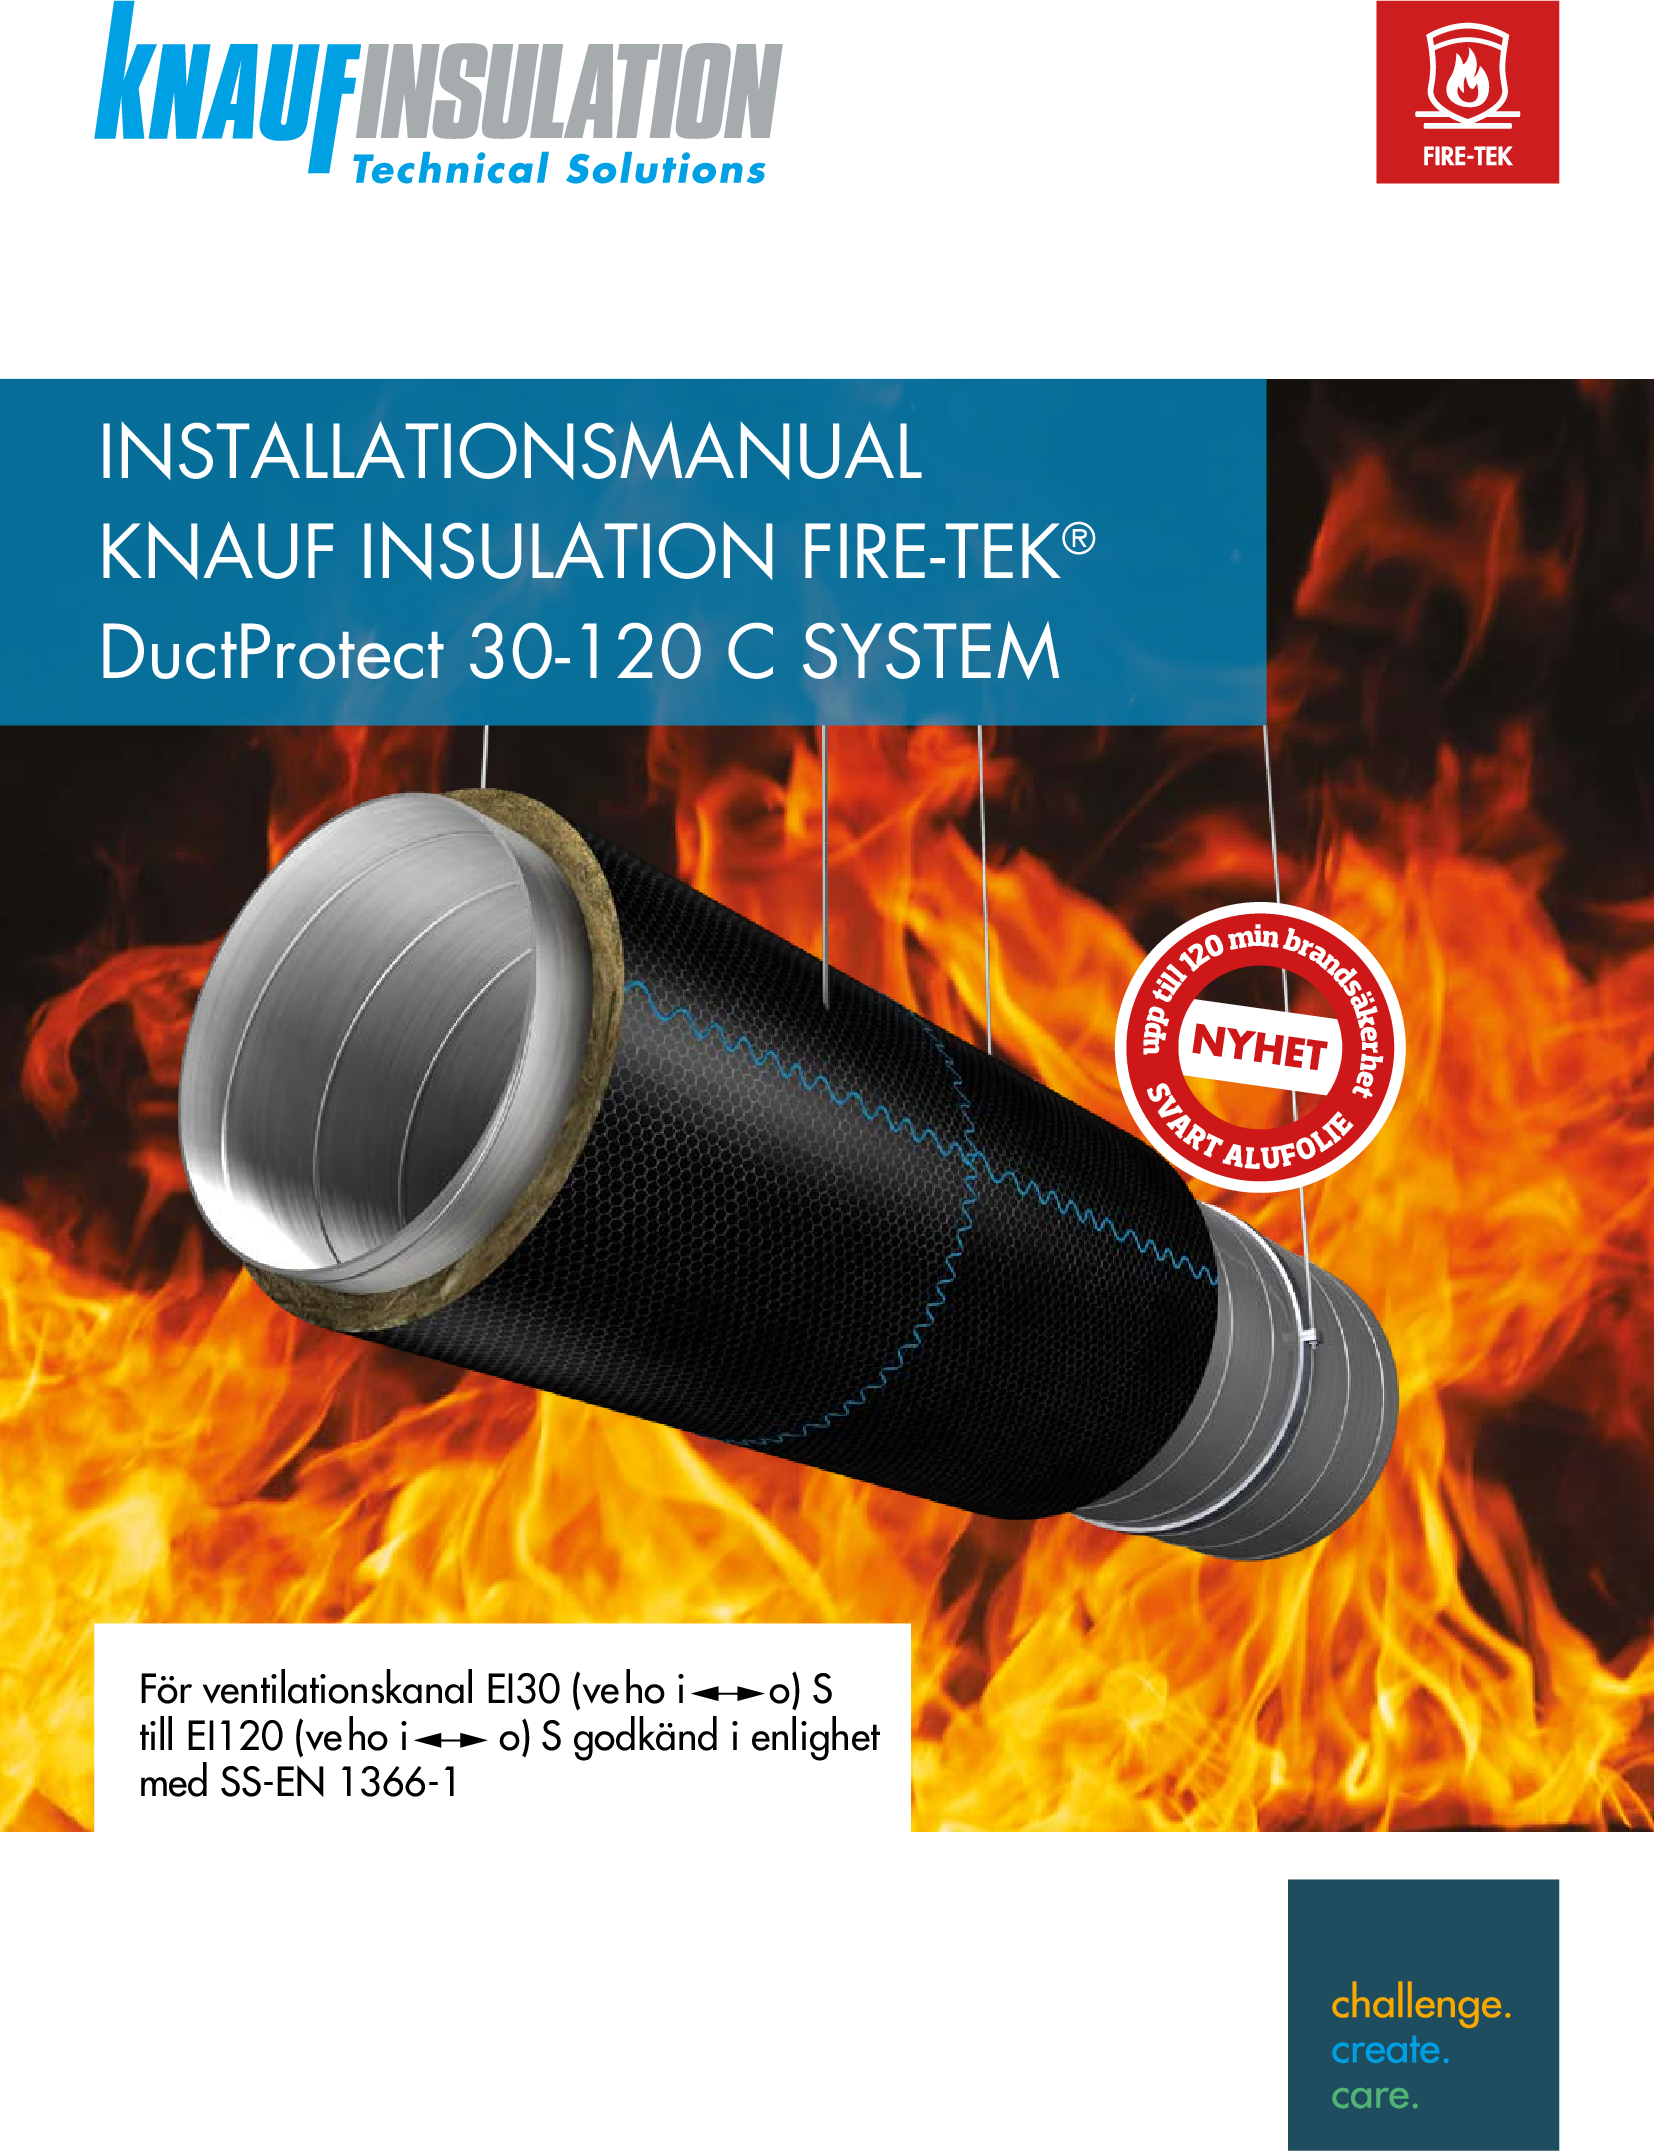 Fire-teK DuctProtect 30-120 C System Manual_SE